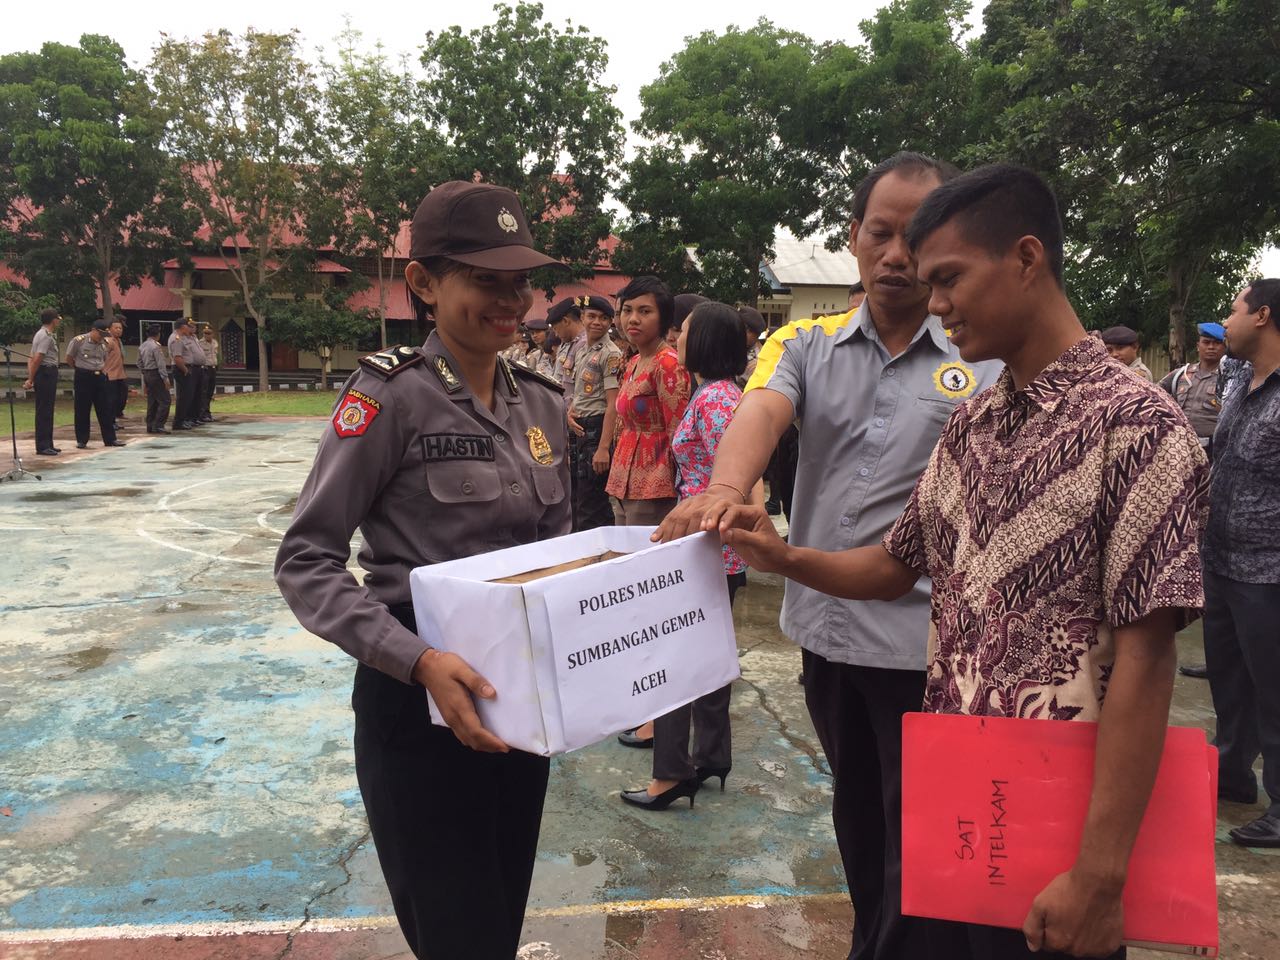 Polres Mabar Menggalar Aksi Simpatik Penggalangan Dana Kemanusiaan Kepada Korban Bencana Gempa di Pidie Jaya-Aceh